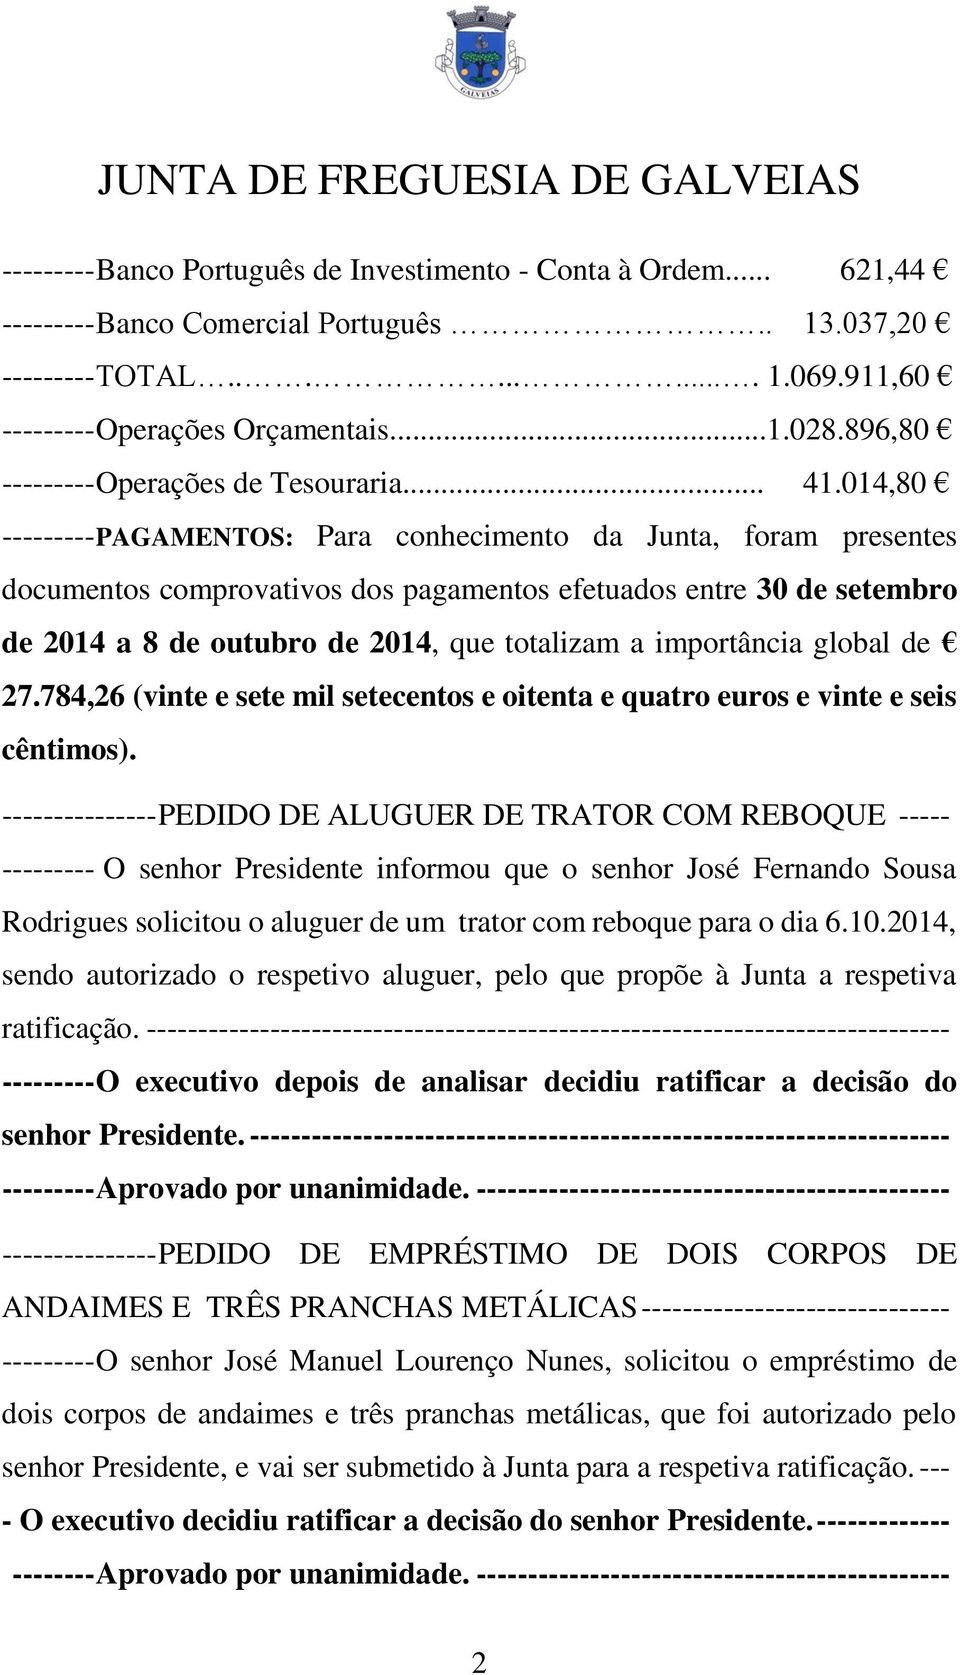 014,80 --------- PAGAMENTOS: Para conhecimento da Junta, foram presentes documentos comprovativos dos pagamentos efetuados entre 30 de setembro de 2014 a 8 de outubro de 2014, que totalizam a